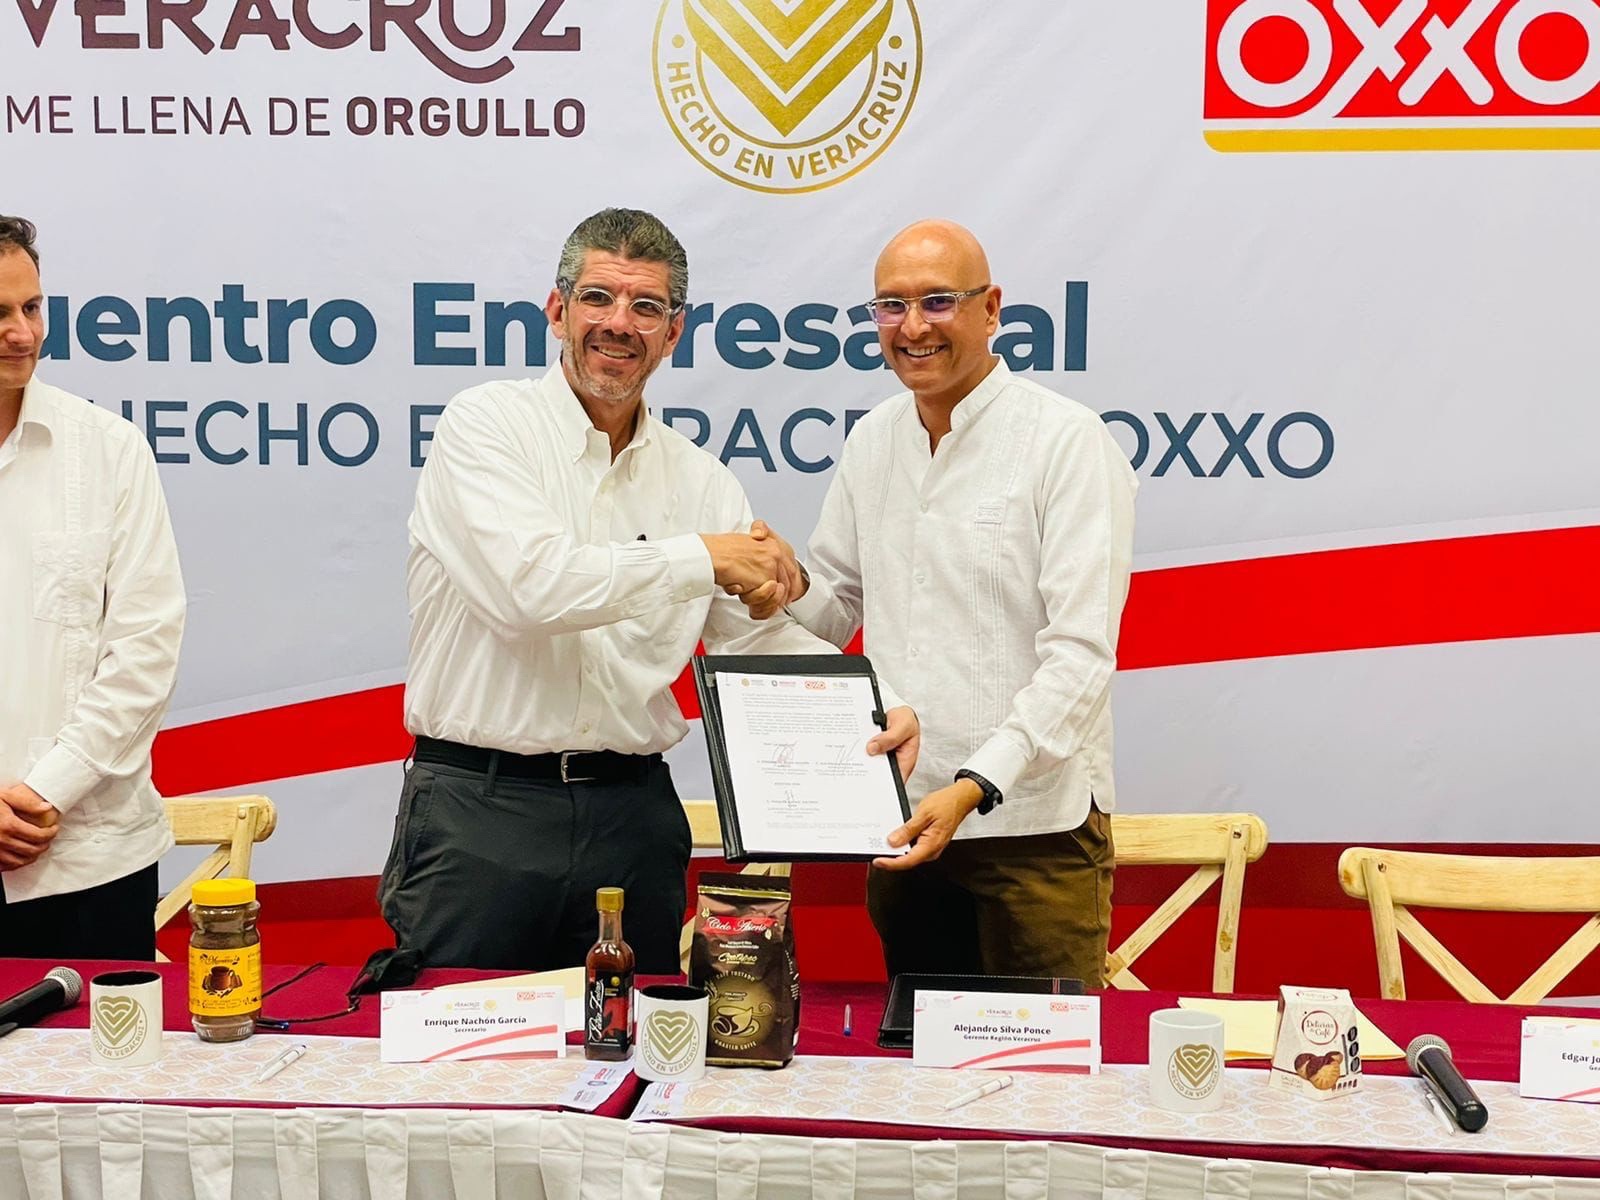 Productos “Hecho en Veracruz” continuarán en tiendas OXXO: Sedecop